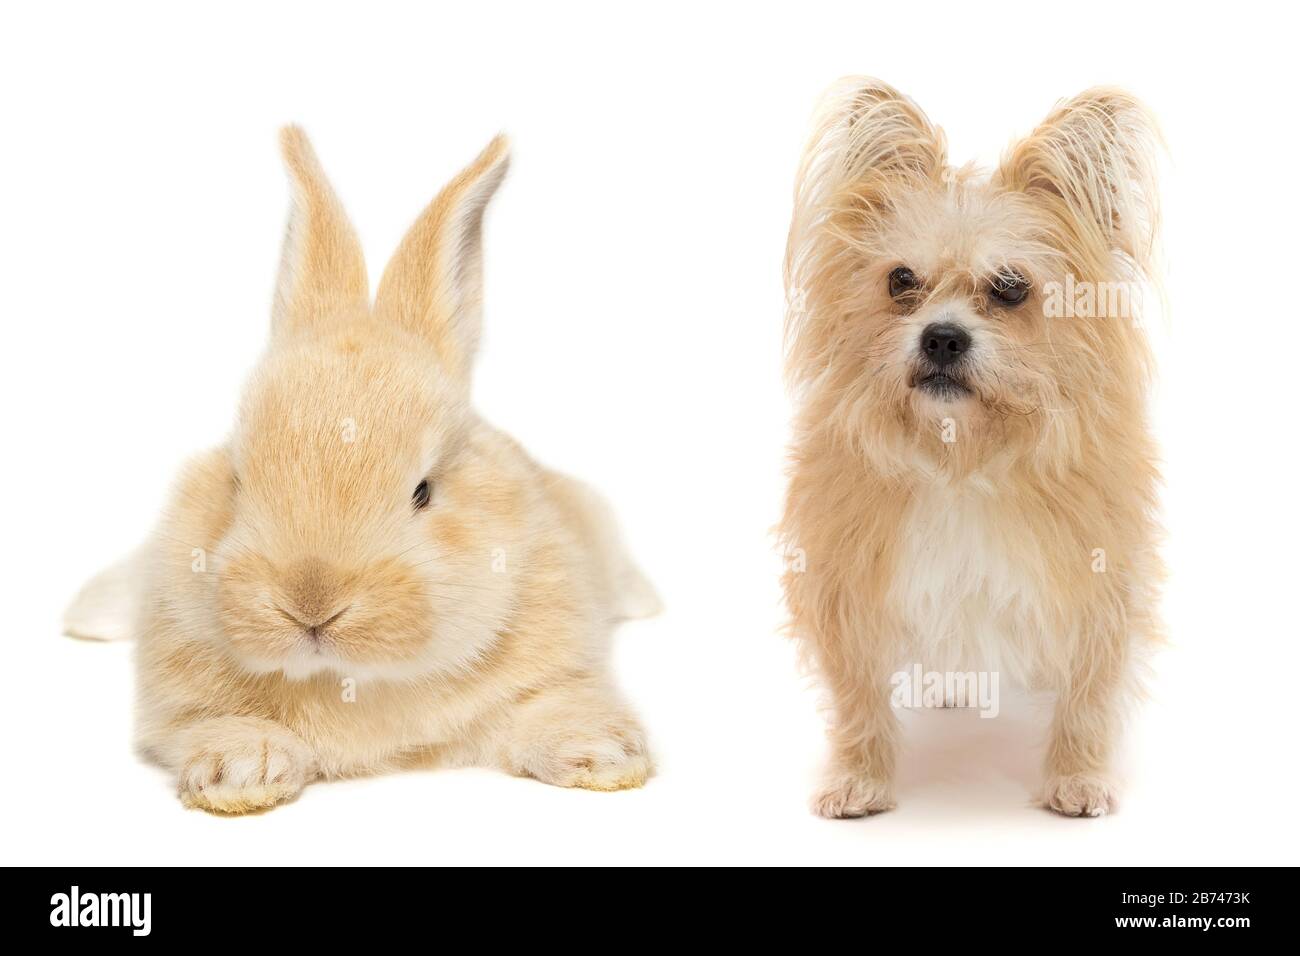 Hund und Kaninchen auf einem weißen, isolierten Hintergrund Stockfoto